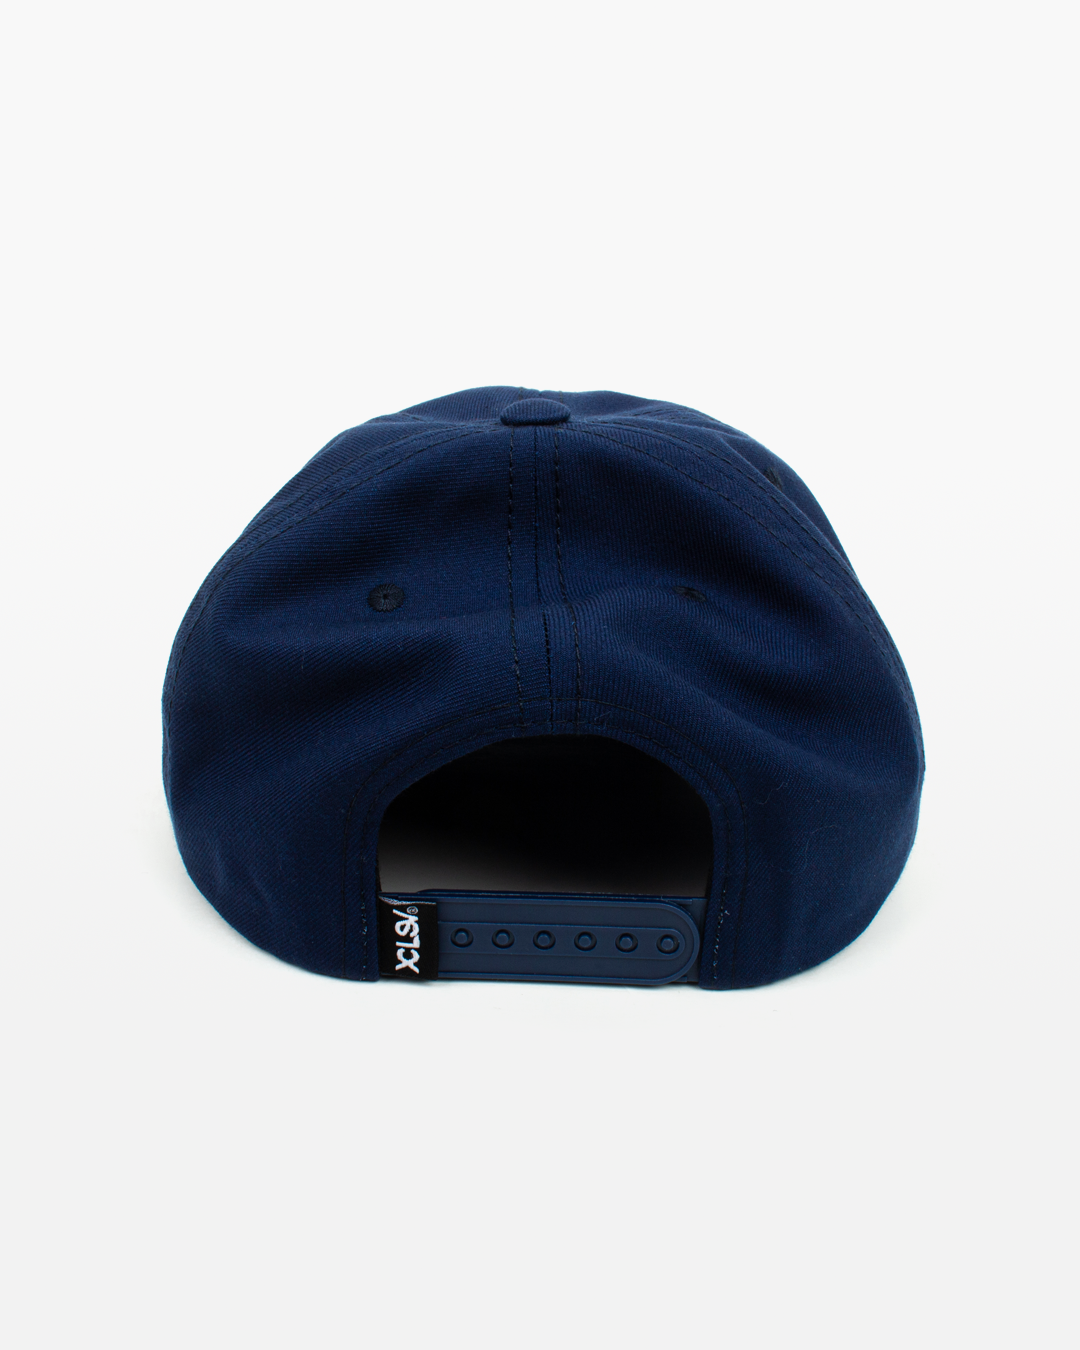 gorra azul marino con bordado de la firma xclusiv